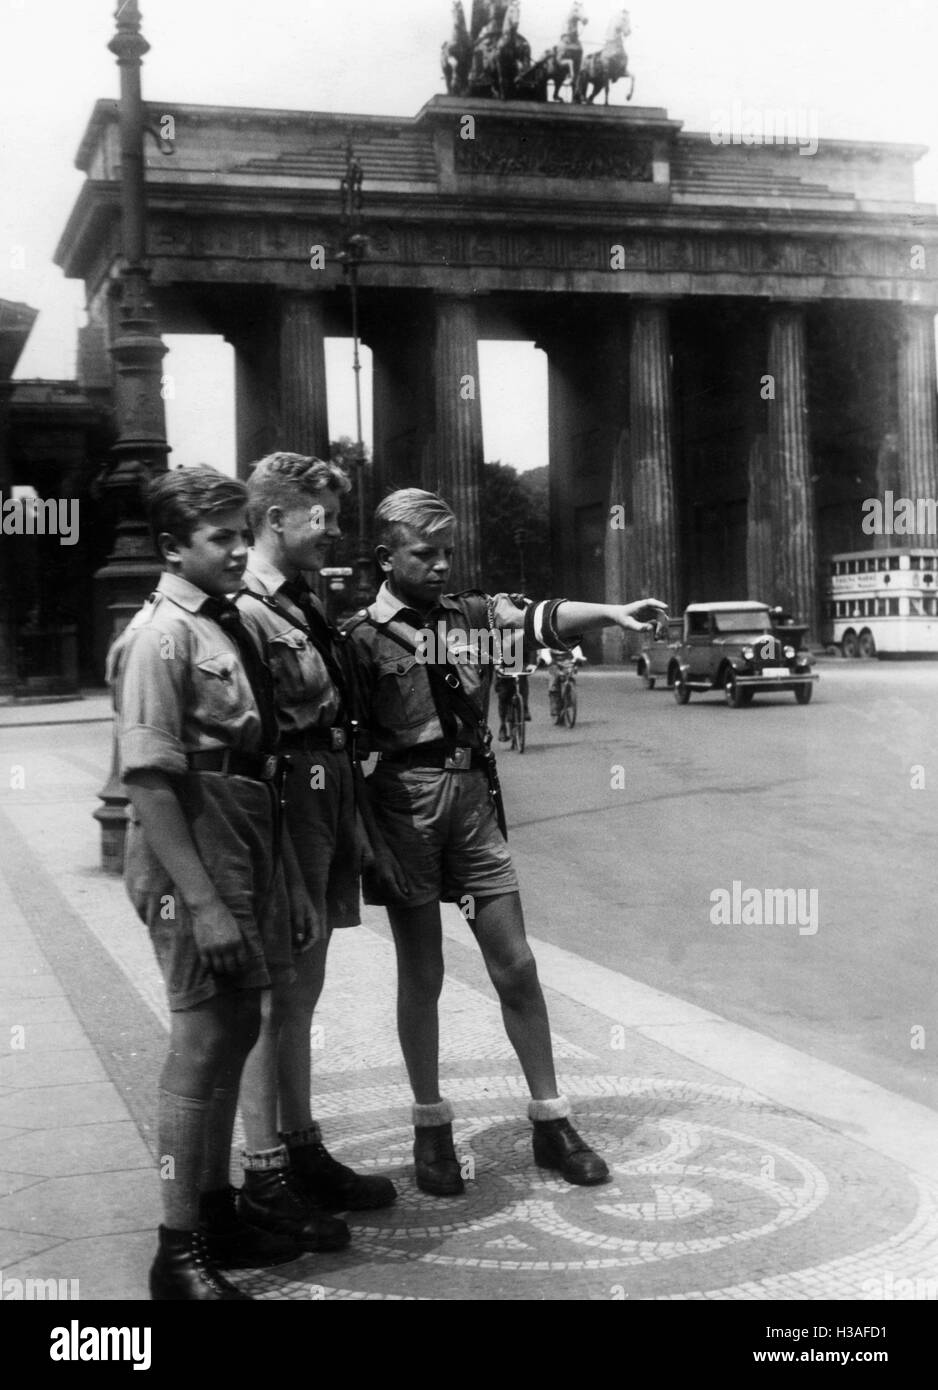 Hitler Youth members visit Berlin, 1934 Stock Photo